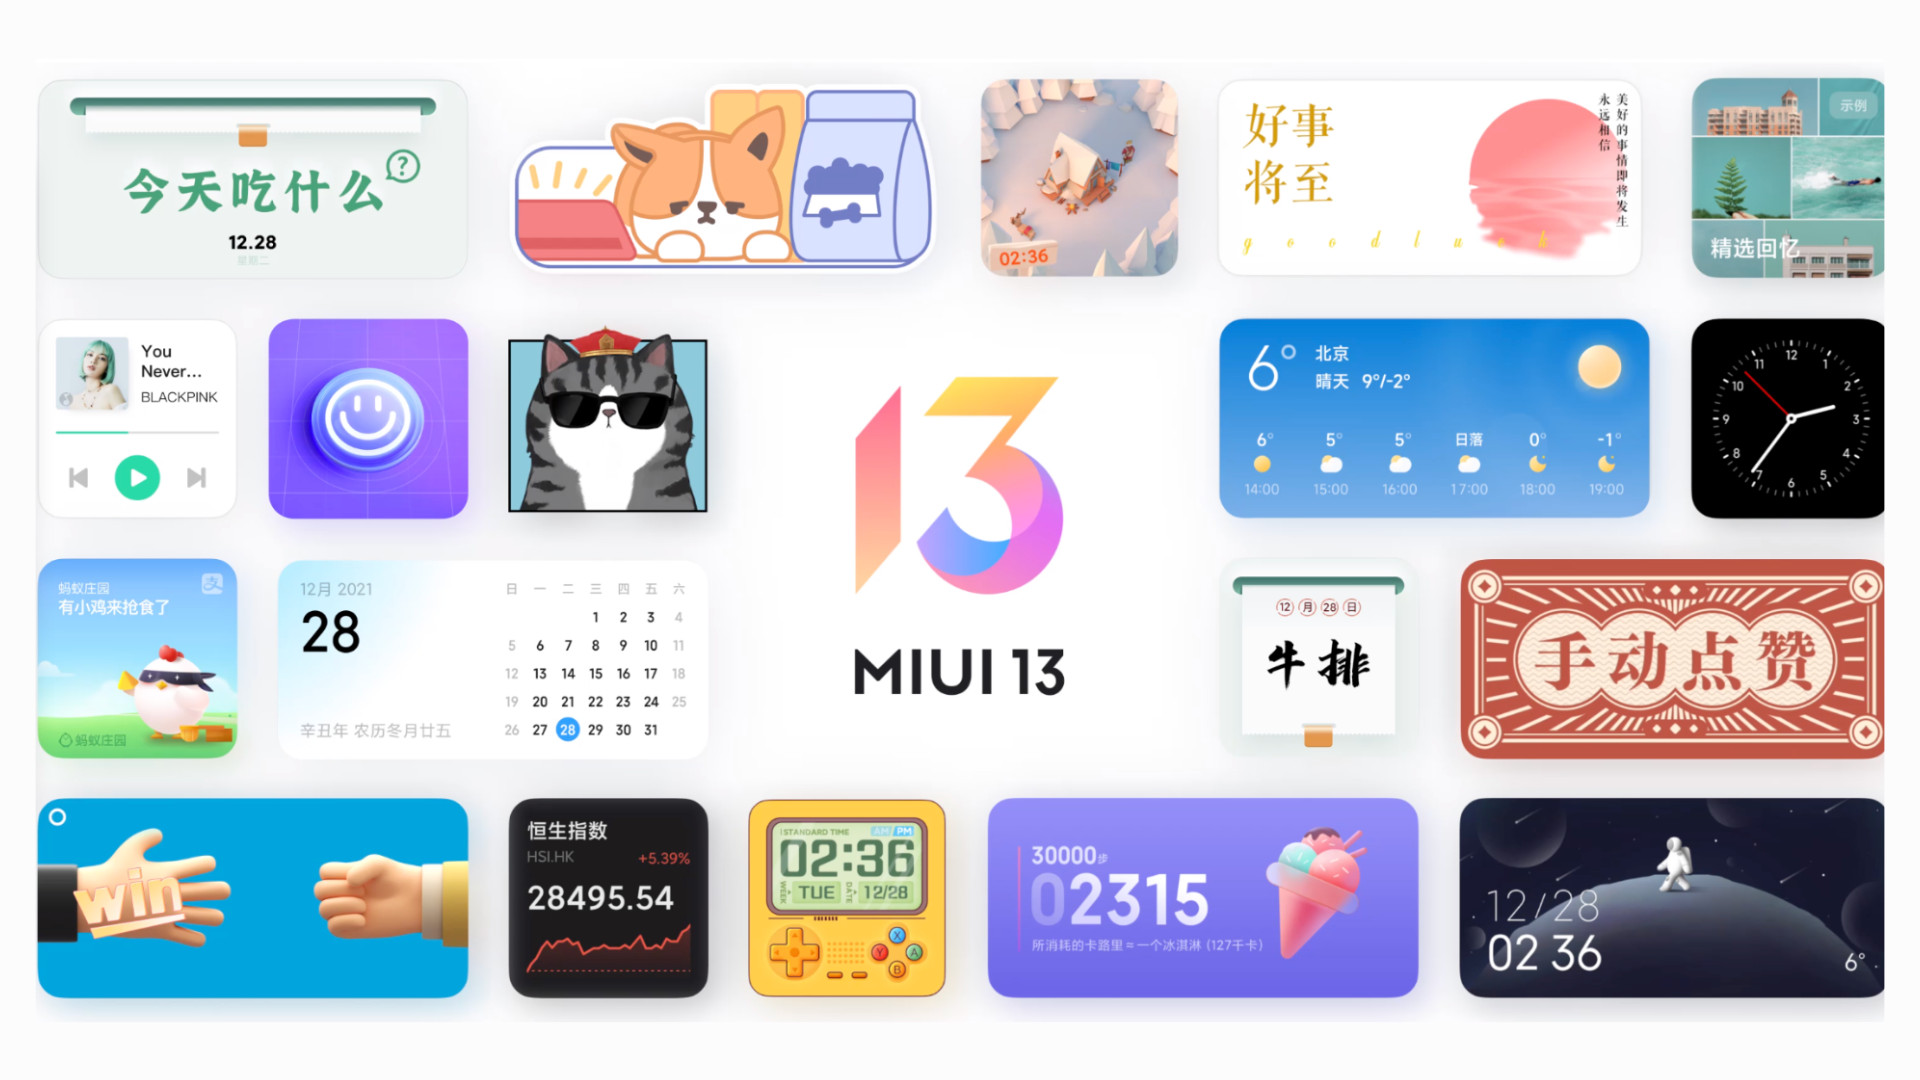 Gli smartphone Xiaomi molto vecchi hanno il firmware MIUI 13 Experience